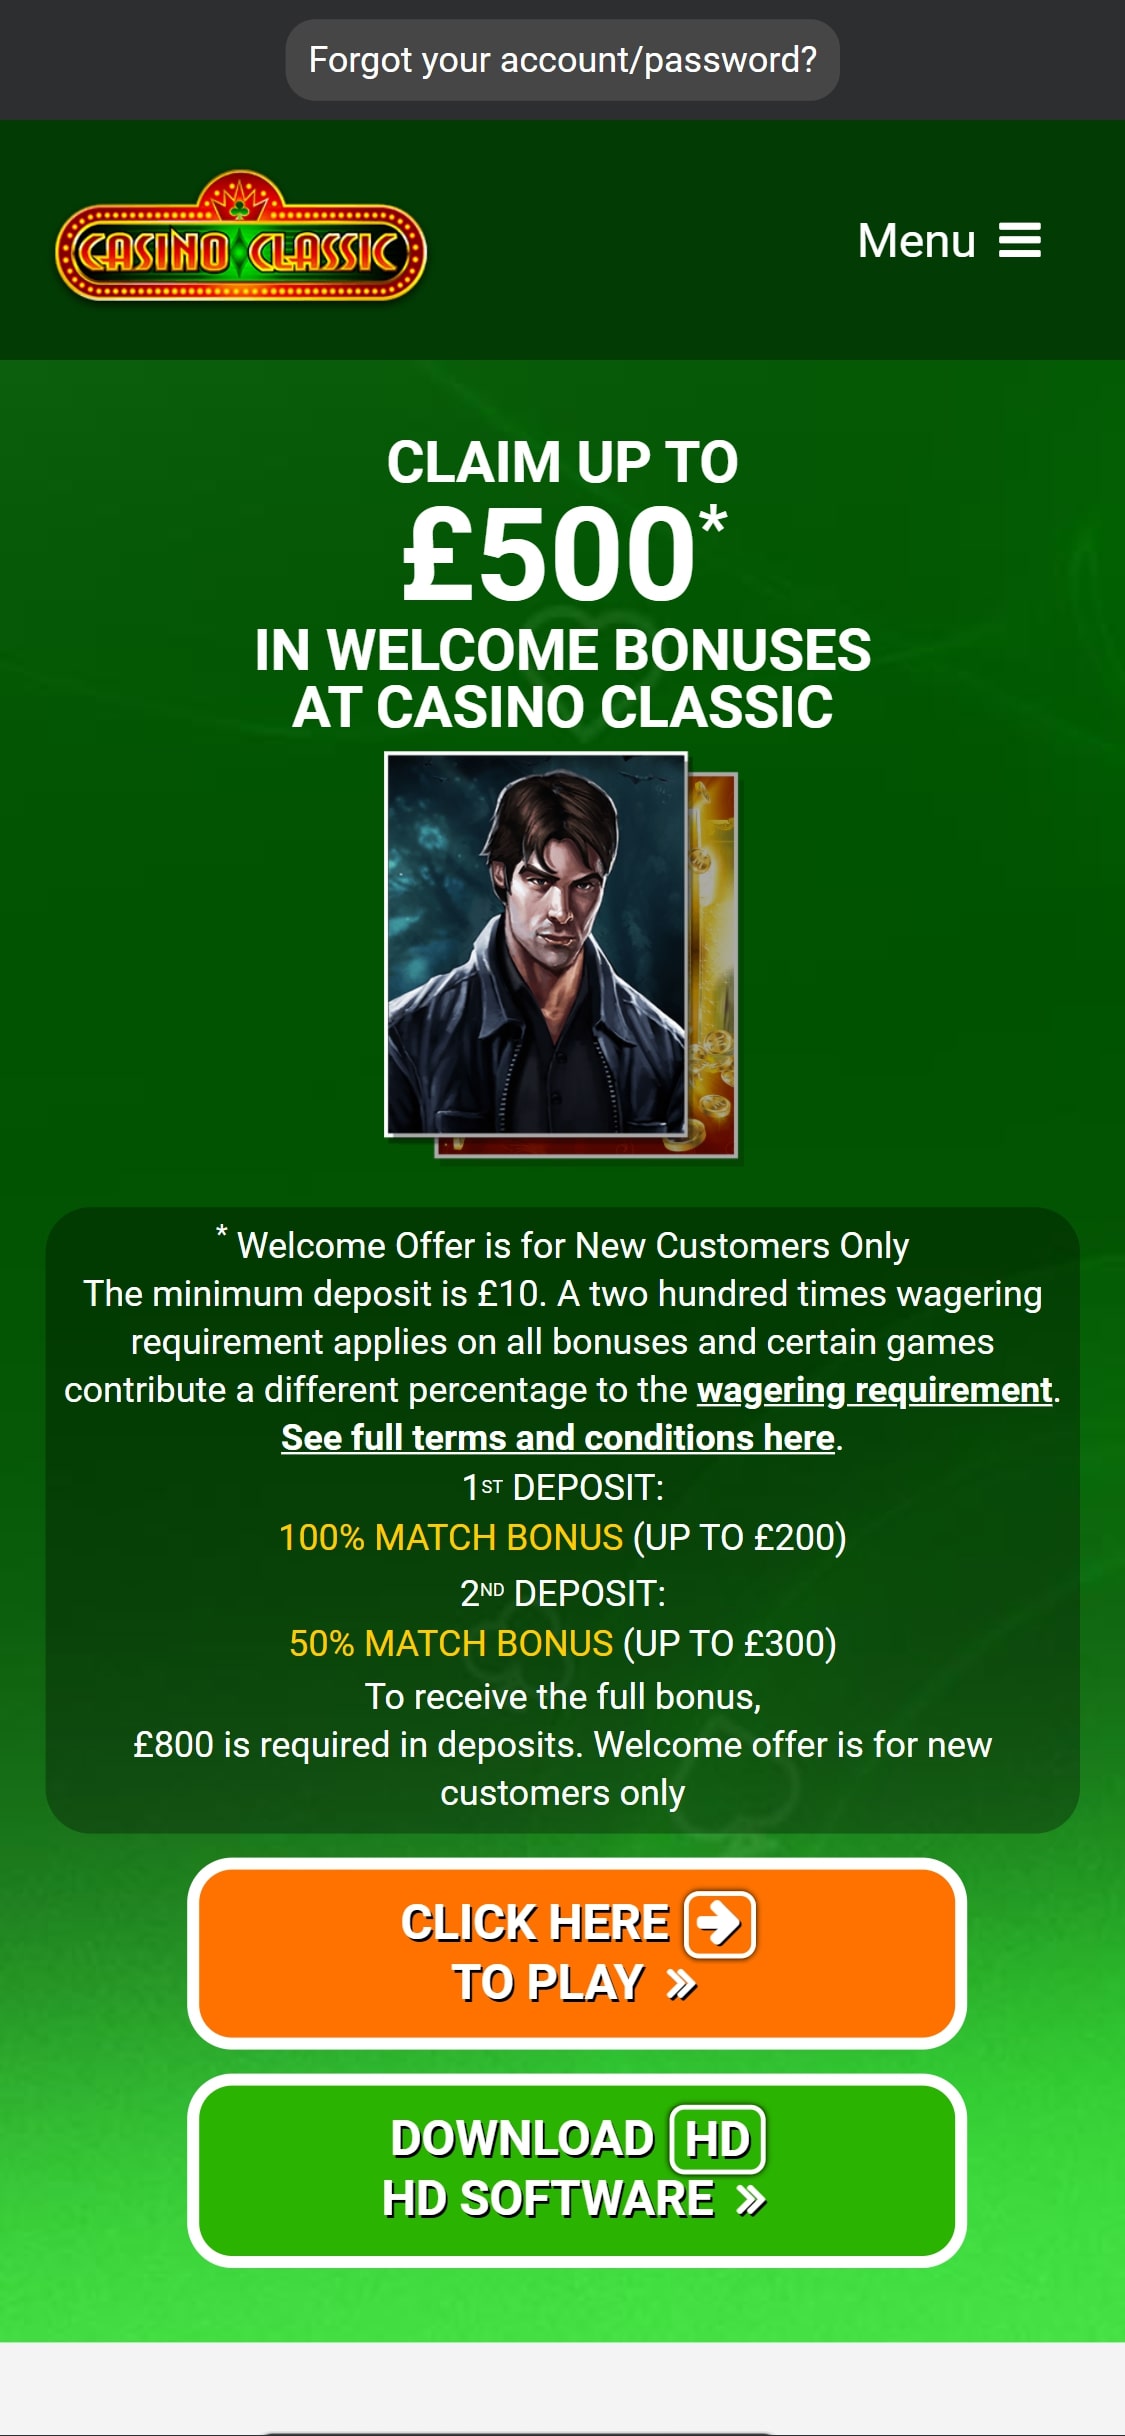 Casino Classic EU Mobile Review